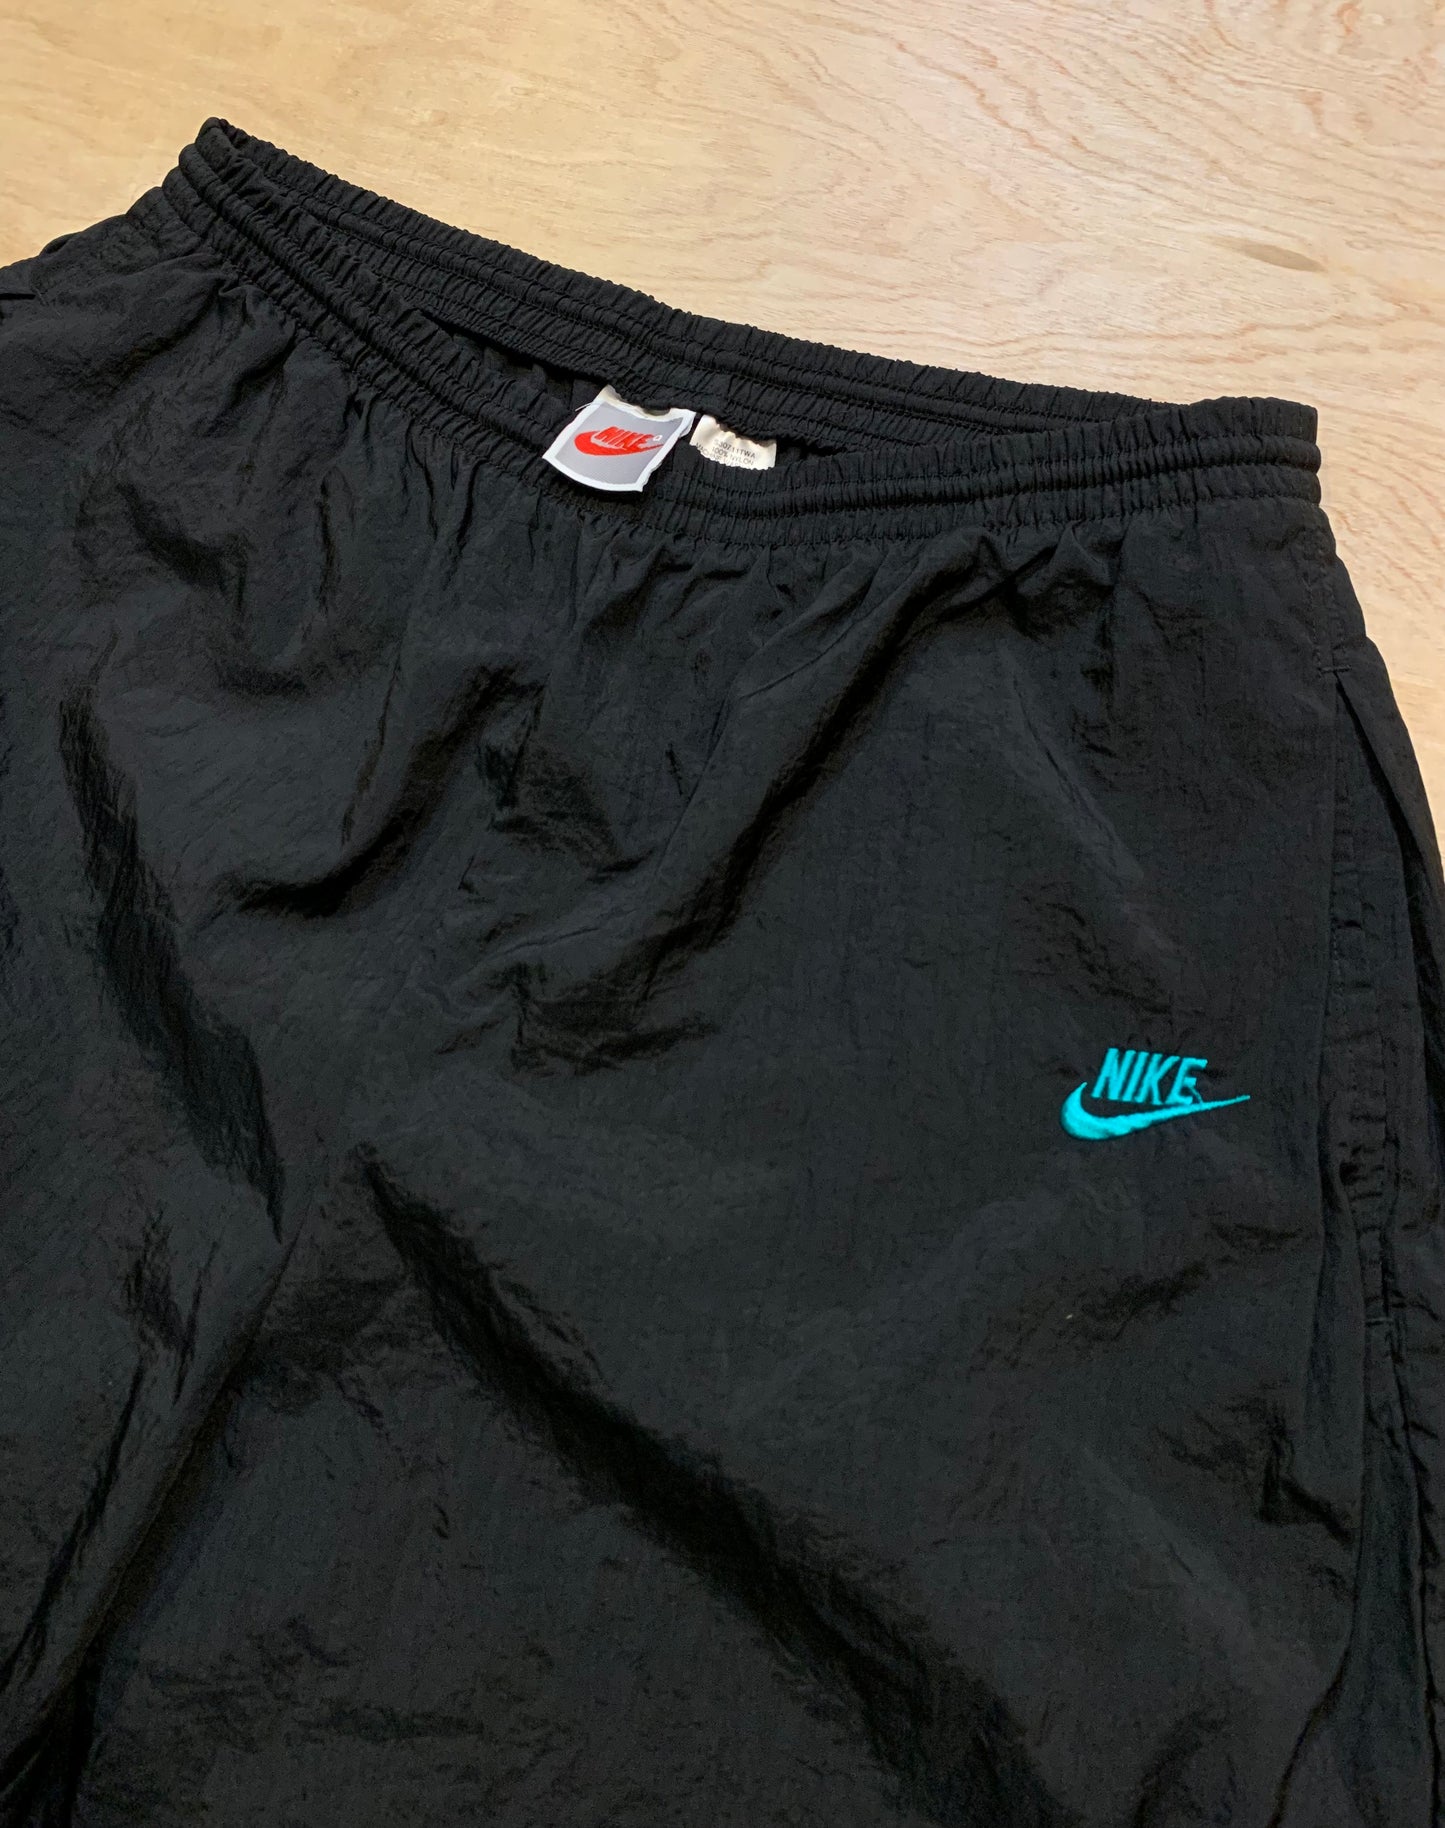 1980's Vintage Nike Windbreaker Pants